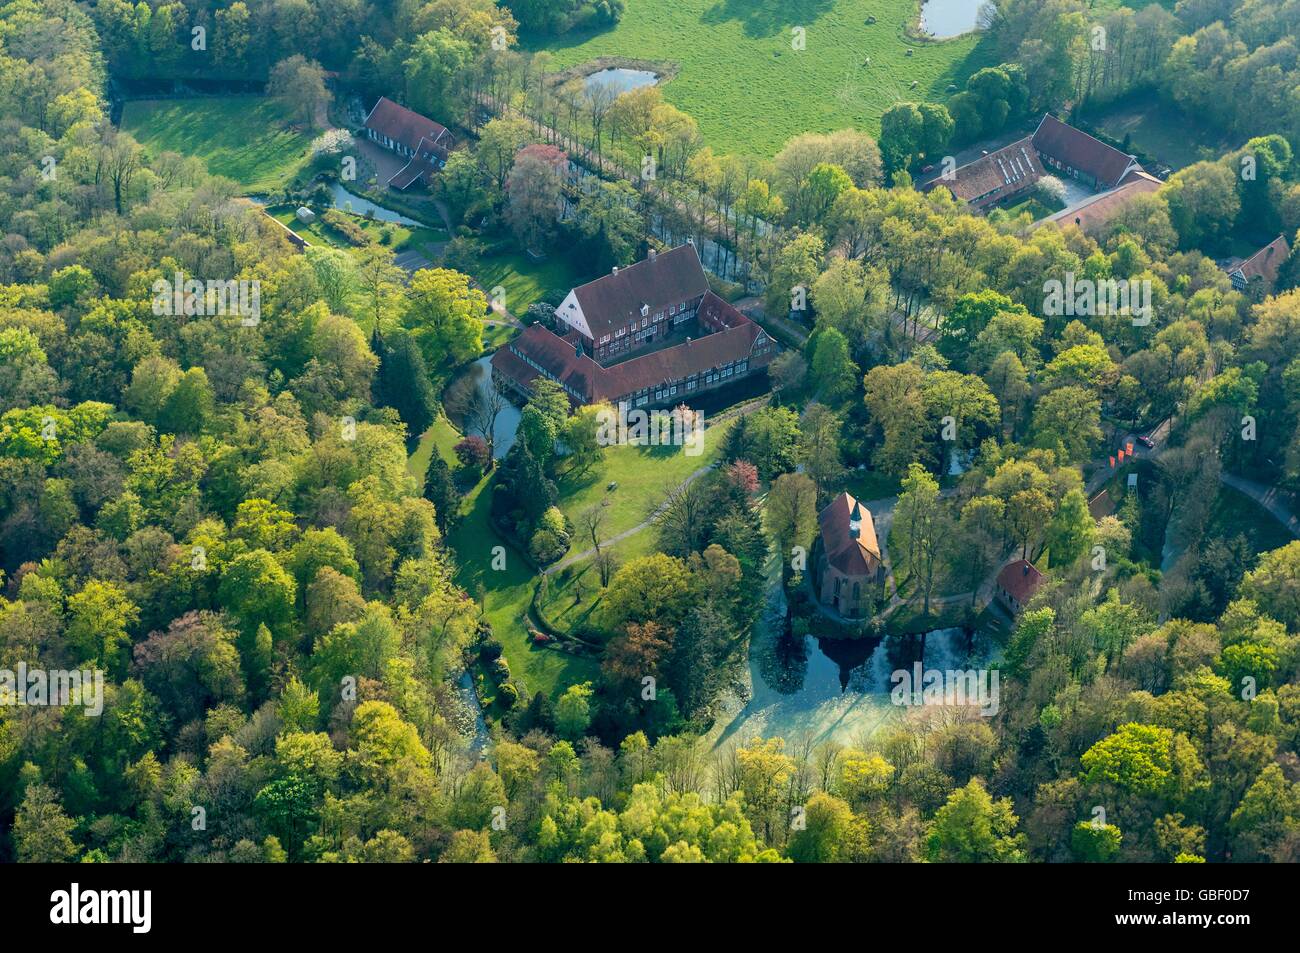 Kloster Burg Dinklage, Dinklage, Landkreis Vechta, Niedersachsen, Deutschland Stock Photo